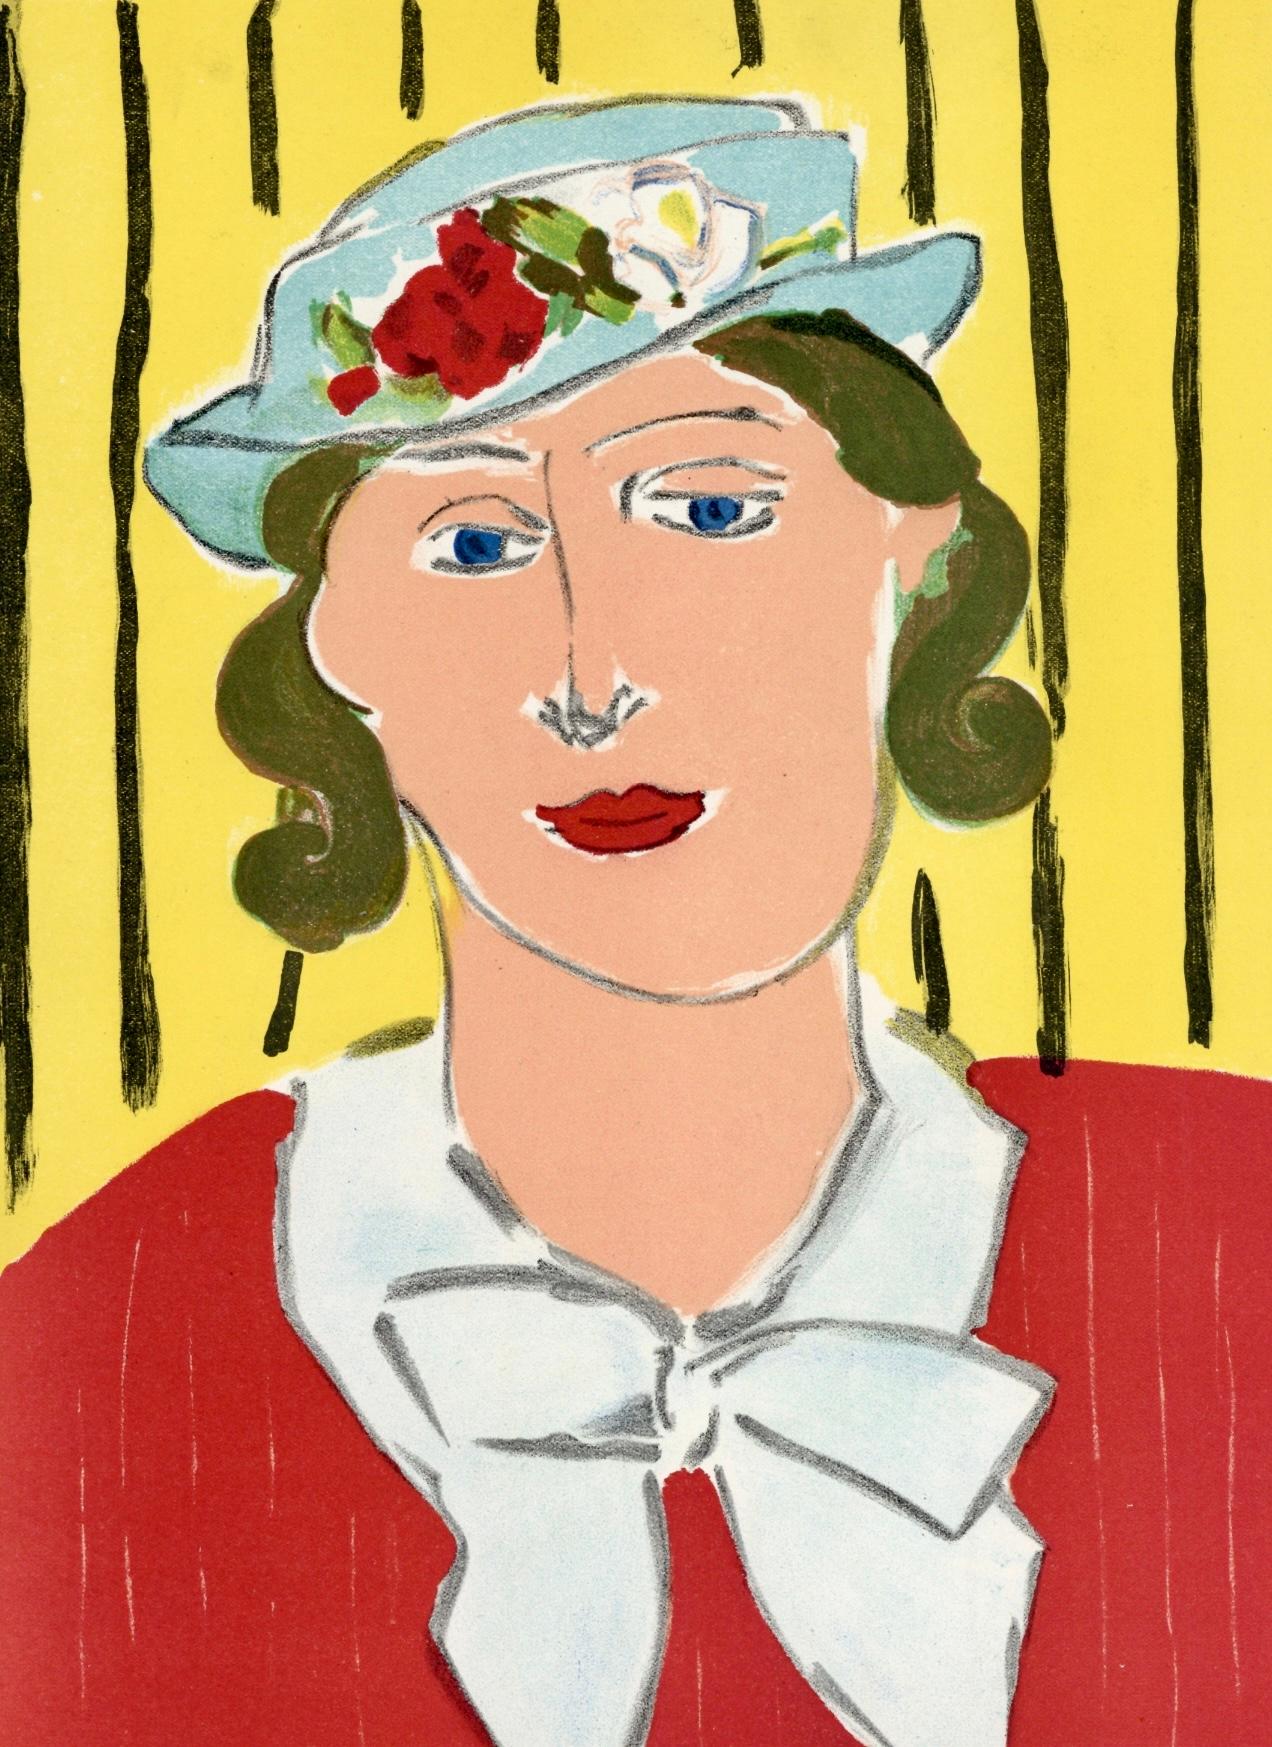 Matisse, Femme au Chapeau, Verve: Revue Artistique et Littéraire (after) - Print by Henri Matisse